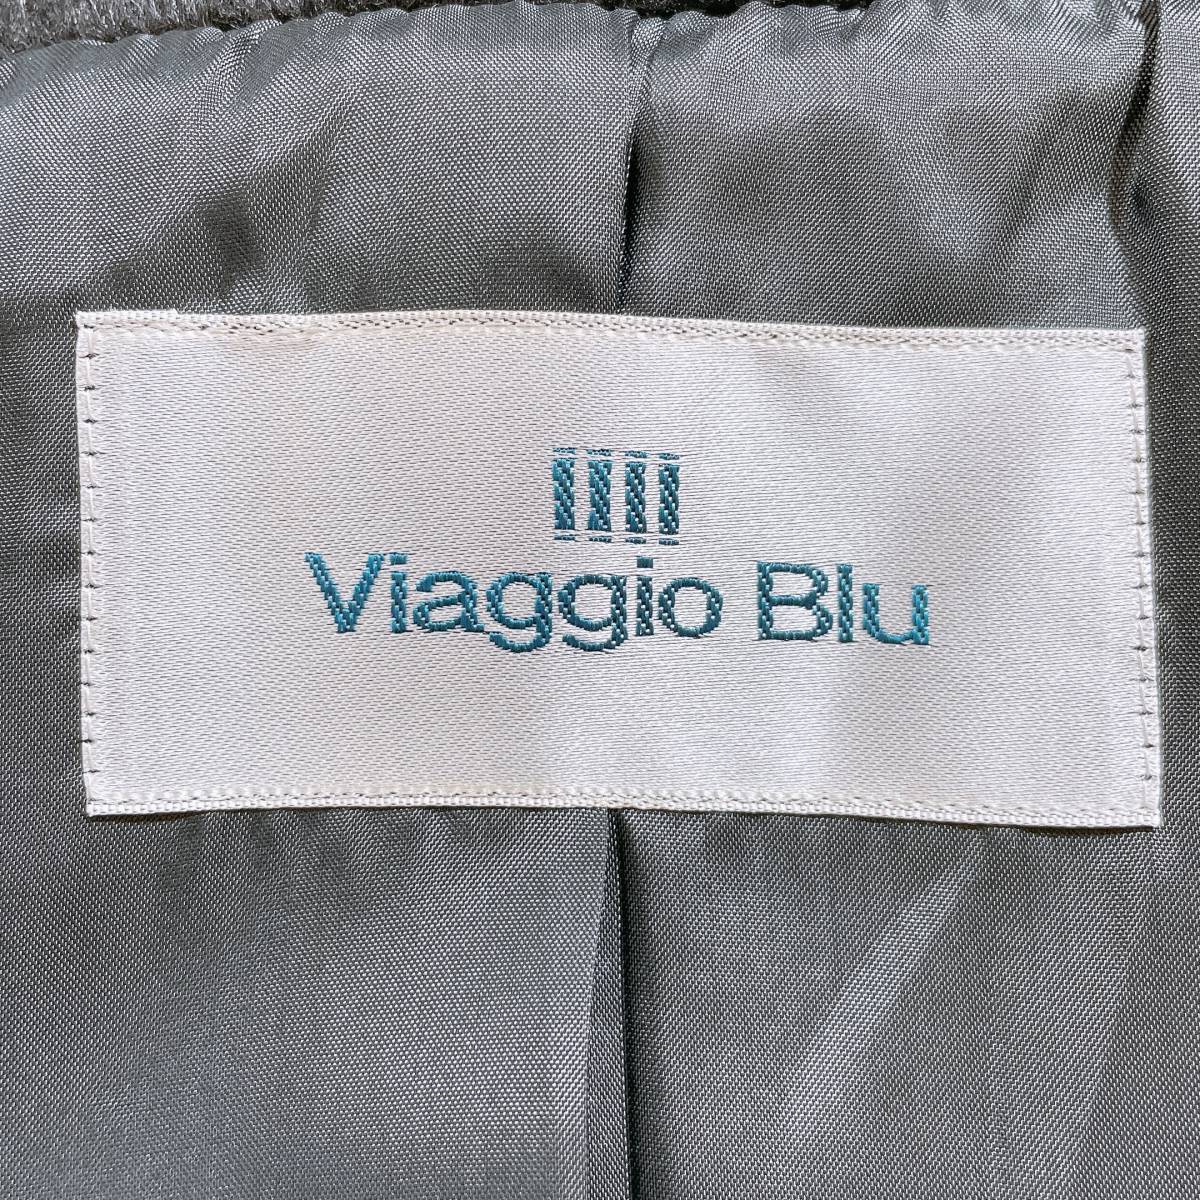 良品 レディース1 S Viaggio Blu ファーコート ロングコート ブラック 黒 かっこいい あたたかい ビアッジョブルー 【19421】